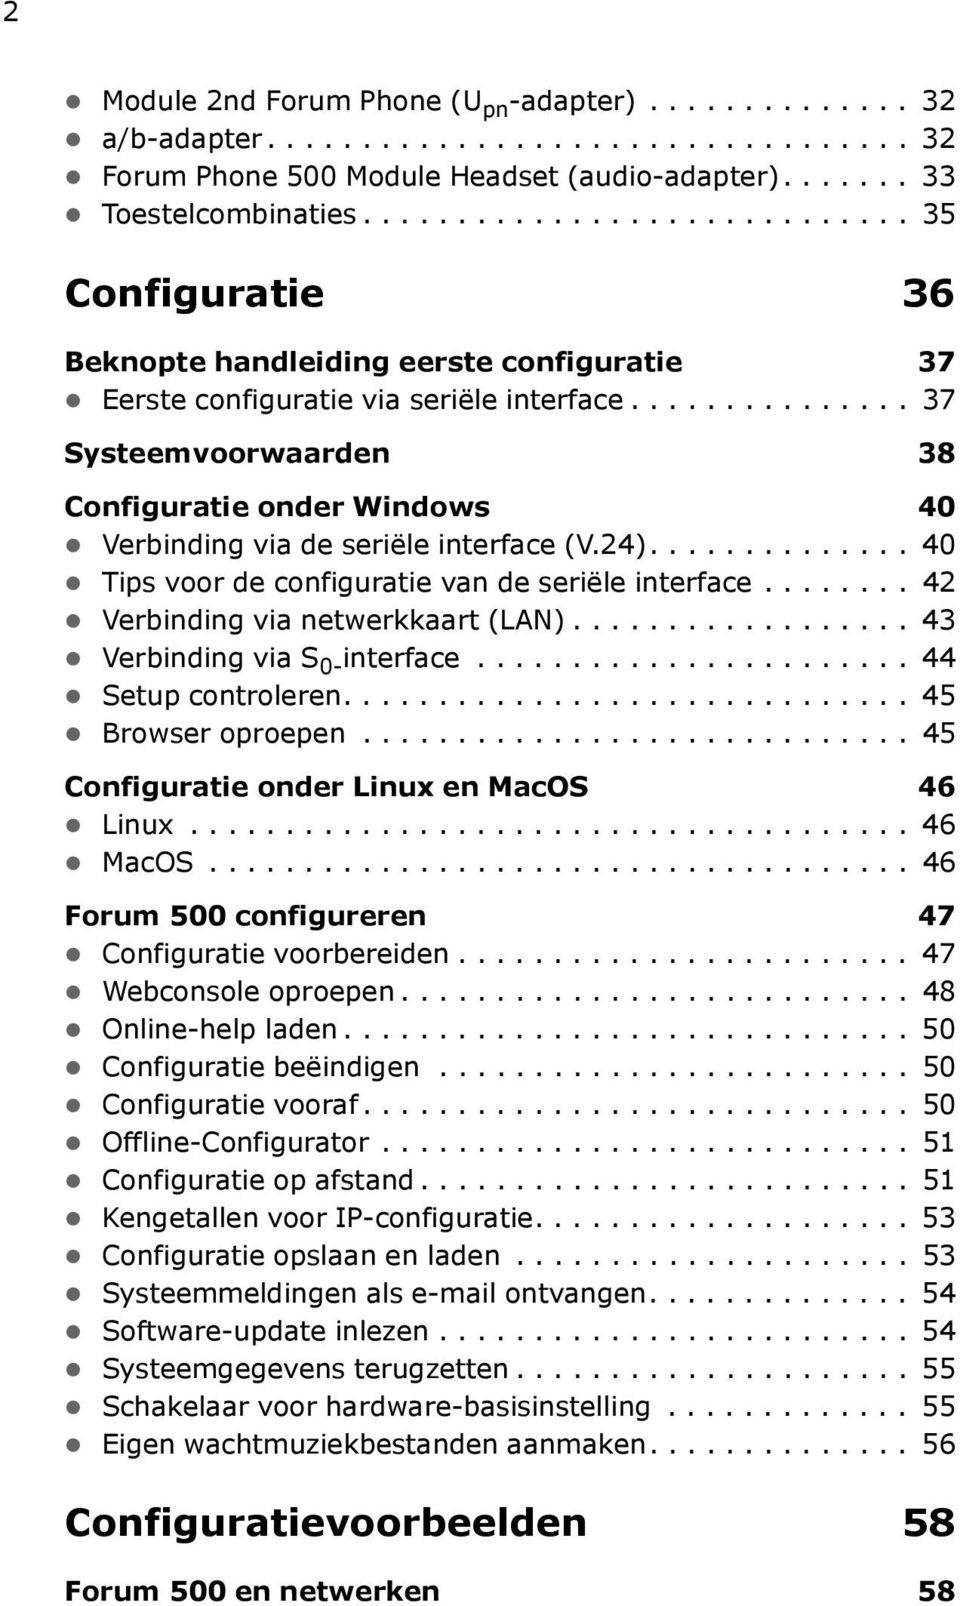 .............. 37 Systeemvoorwaarden 38 Configuratie onder Windows 40 Verbinding via de seriële interface (V.24).............. 40 Tips voor de configuratie van de seriële interface.